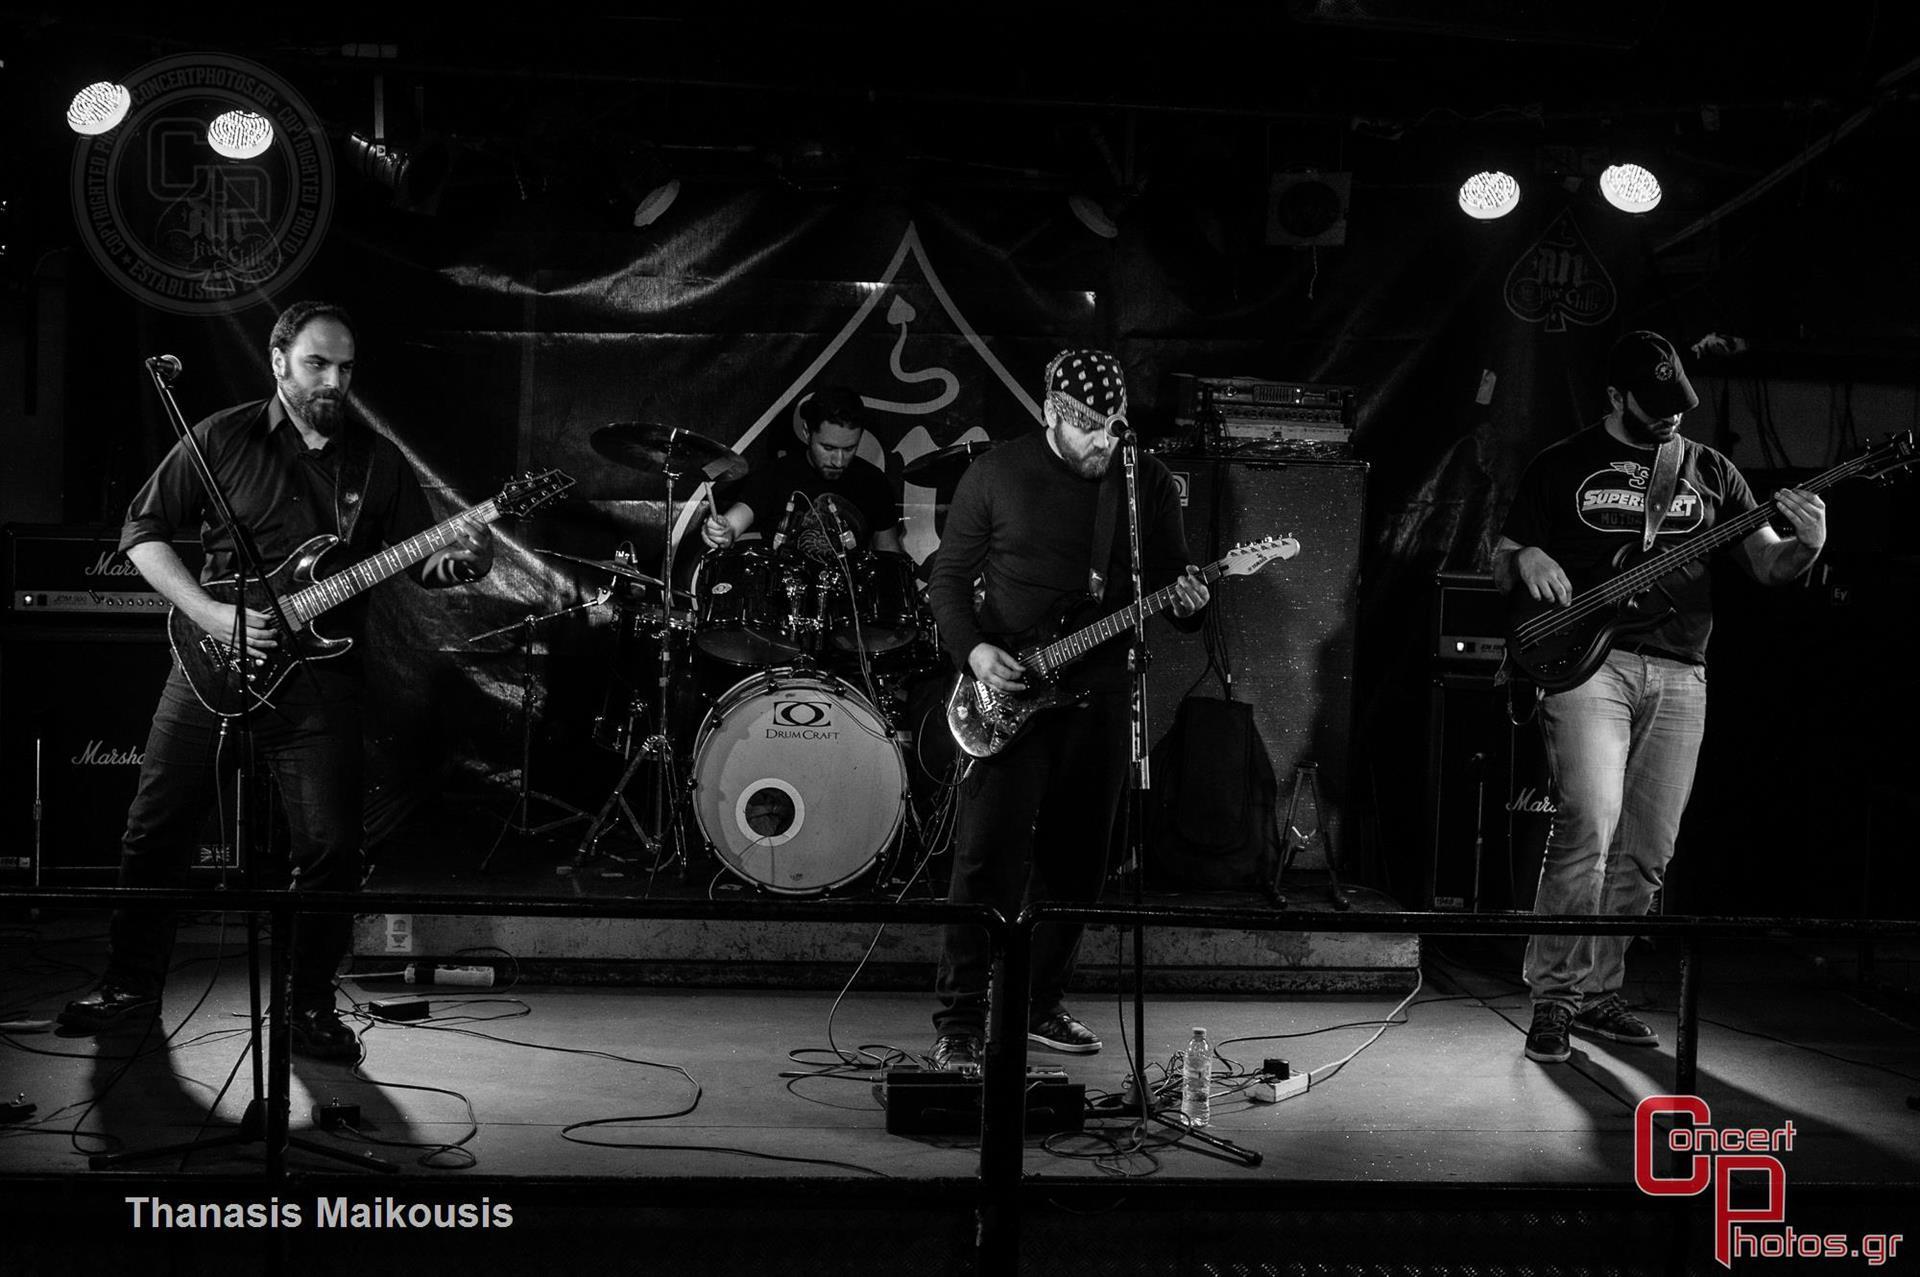 Battle Of The Bands Leg 5-Battle Of The Bands Leg 4 photographer: Thanasis Maikousis - ConcertPhotos - 20150315_2154_13